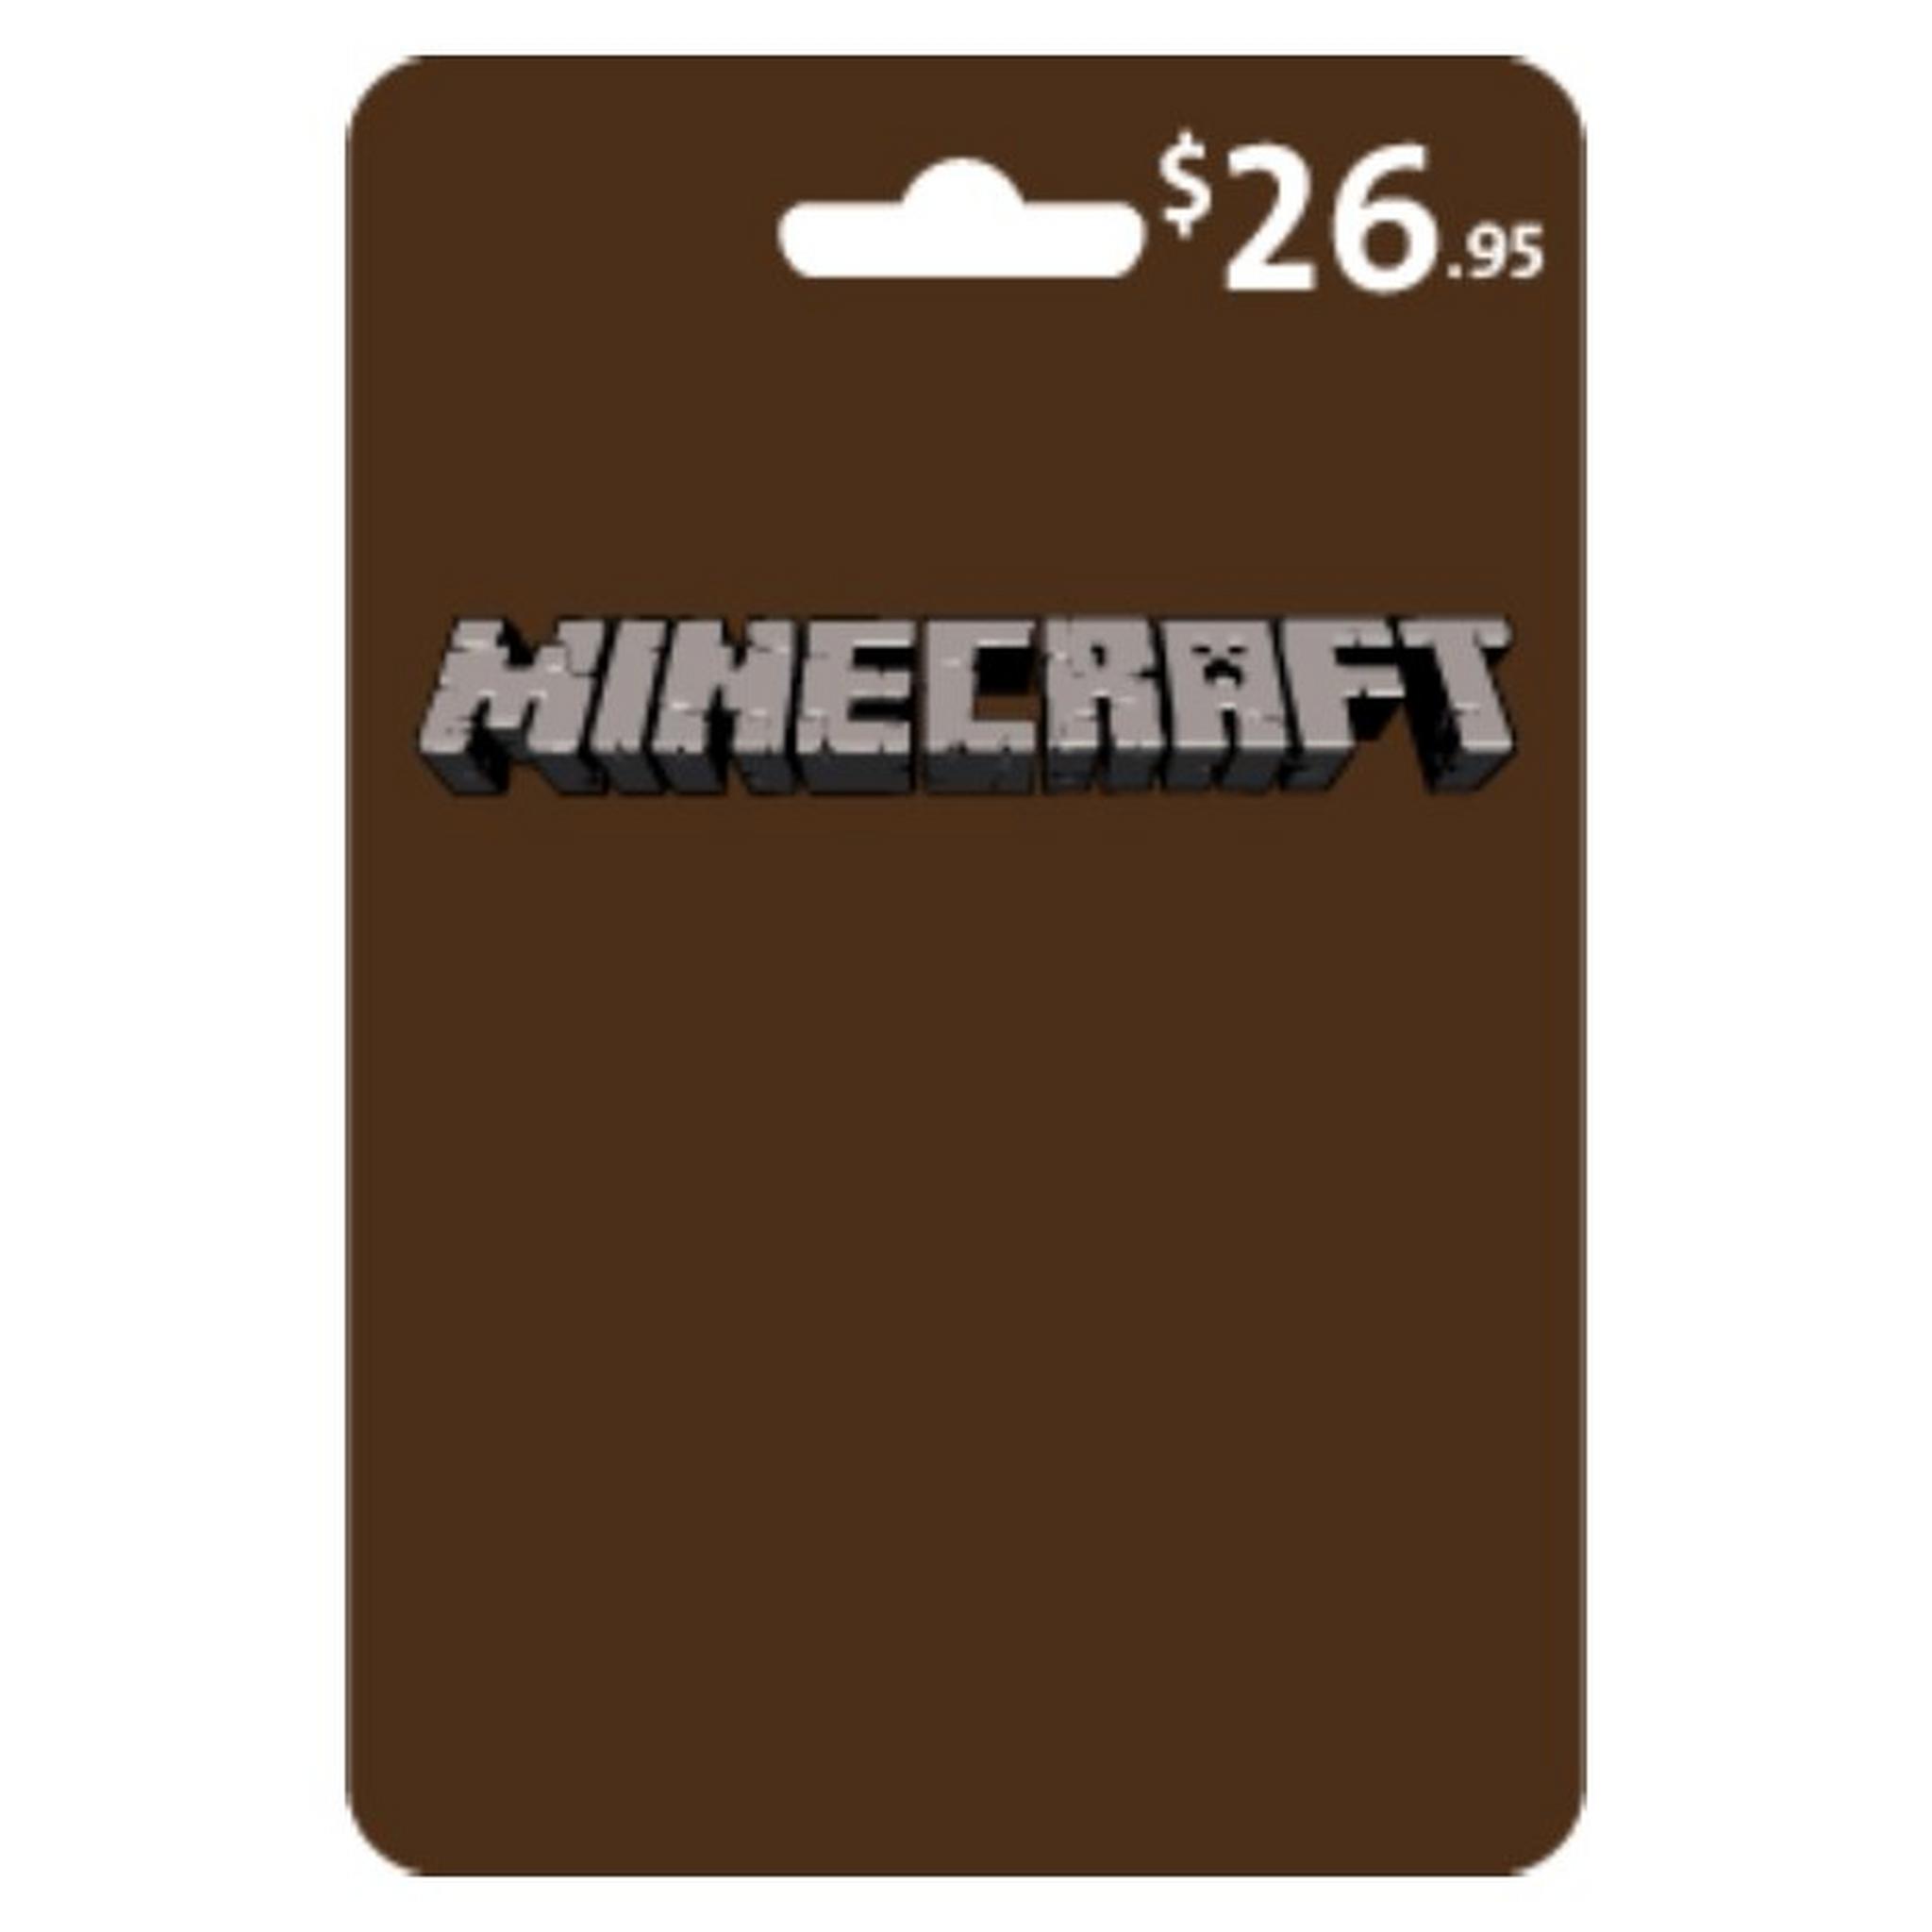 Minecraft Voucher $26.95